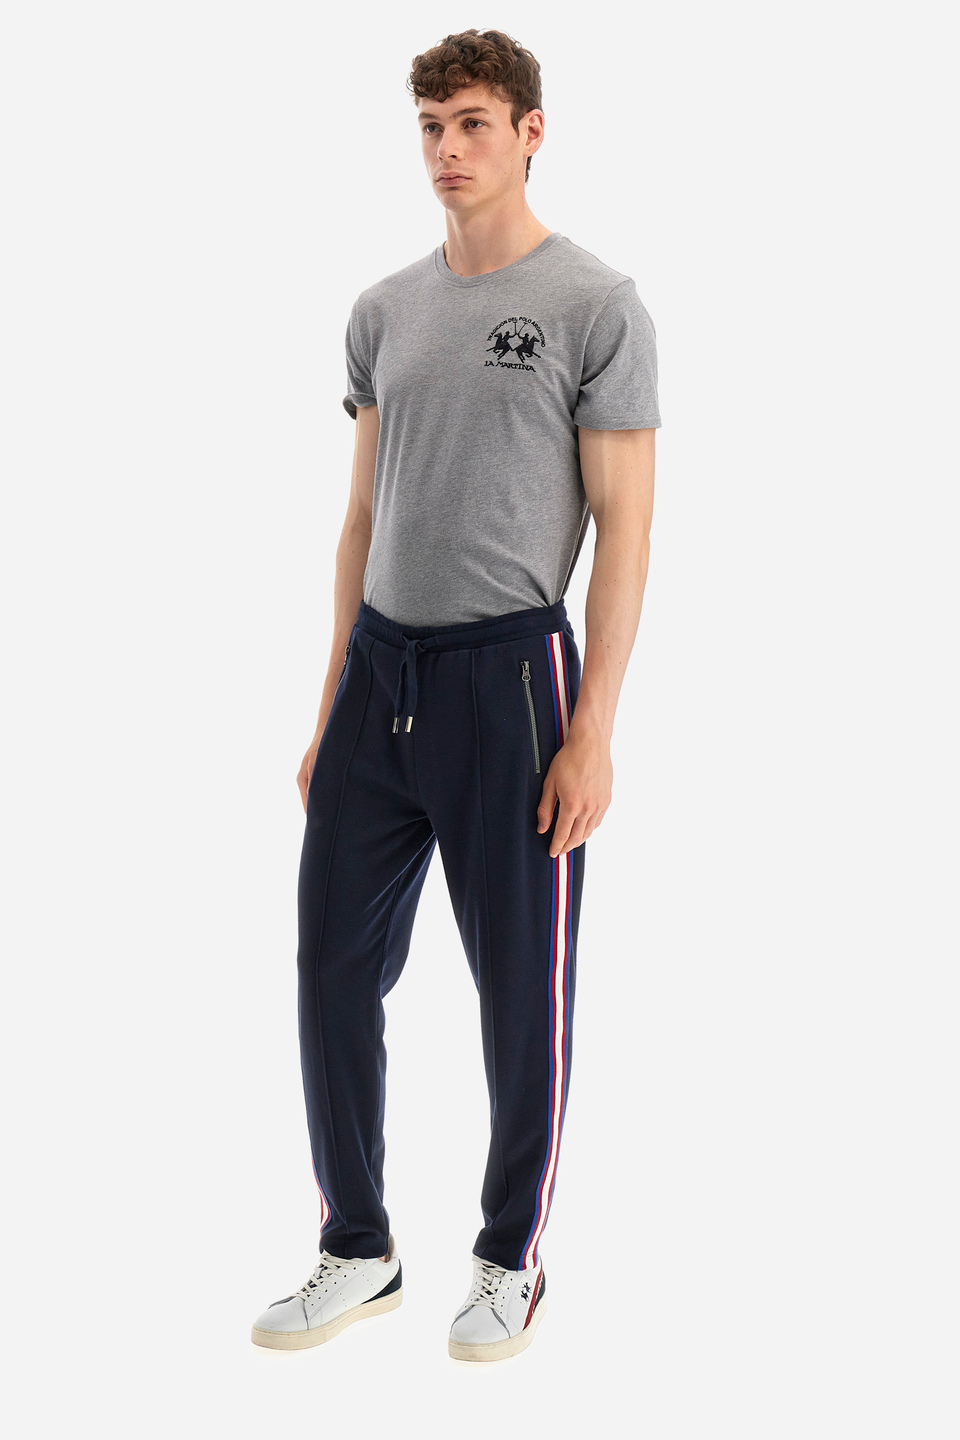 Pantalon de jogging homme coupe classique - Wescott Bleu marine La Martina